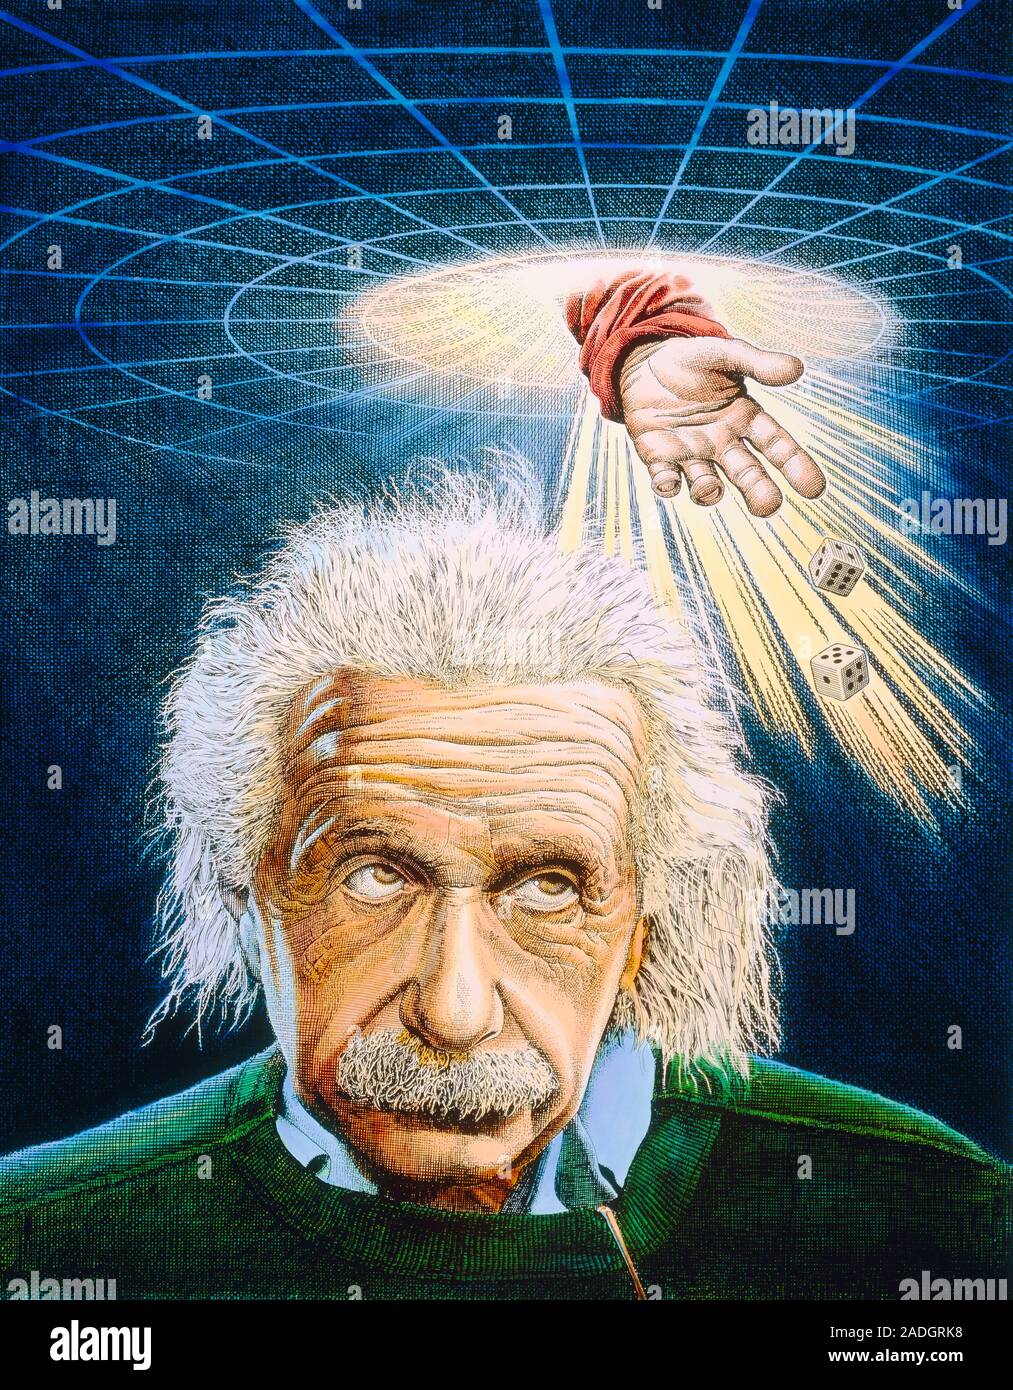 Dios no juega a los dados. Albert Einstein, alemán- Swiss-American físico,  nacido en Ulm, Alemania, 14 de marzo de 1879, murió de Princeton, EE.UU.,  18 de abril de 1955. En 1 Fotografía